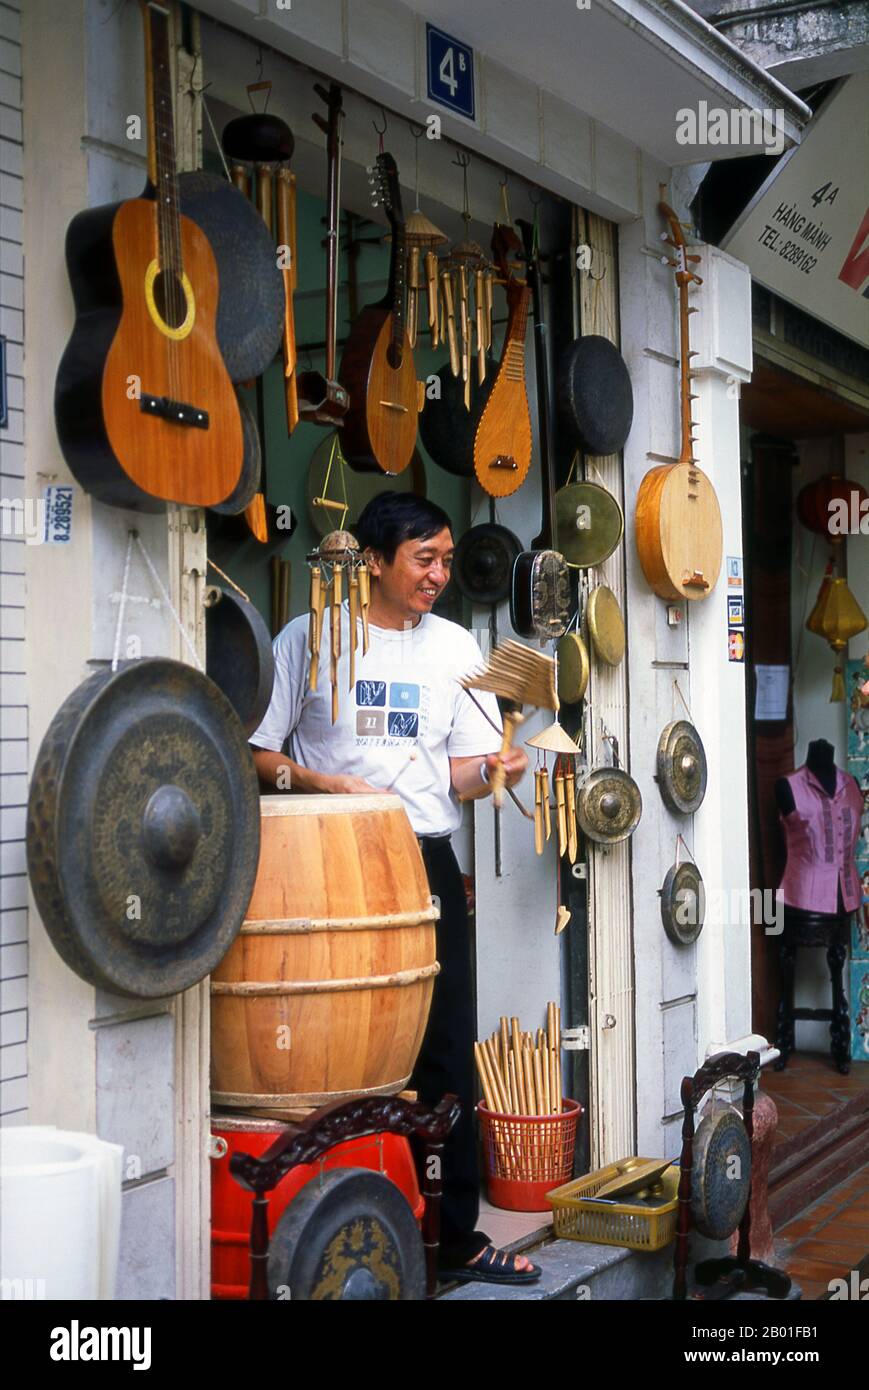 Vietnam: Strumenti musicali in vendita nel centro storico di Hanoi. Il centro storico di Hanoi si trova immediatamente a nord del lago ho Hoan Kiem. E 'meglio conosciuto localmente come Bam Sau Pho Phuong o le 'trentasei strade'. 'Phuong' significa una gilda commerciale, e la maggior parte delle strade inizia con la parola 'appendere' che significa merce. Questa parte antica della città è stata a lungo associata al commercio, e lo rimane molto oggi. Foto Stock